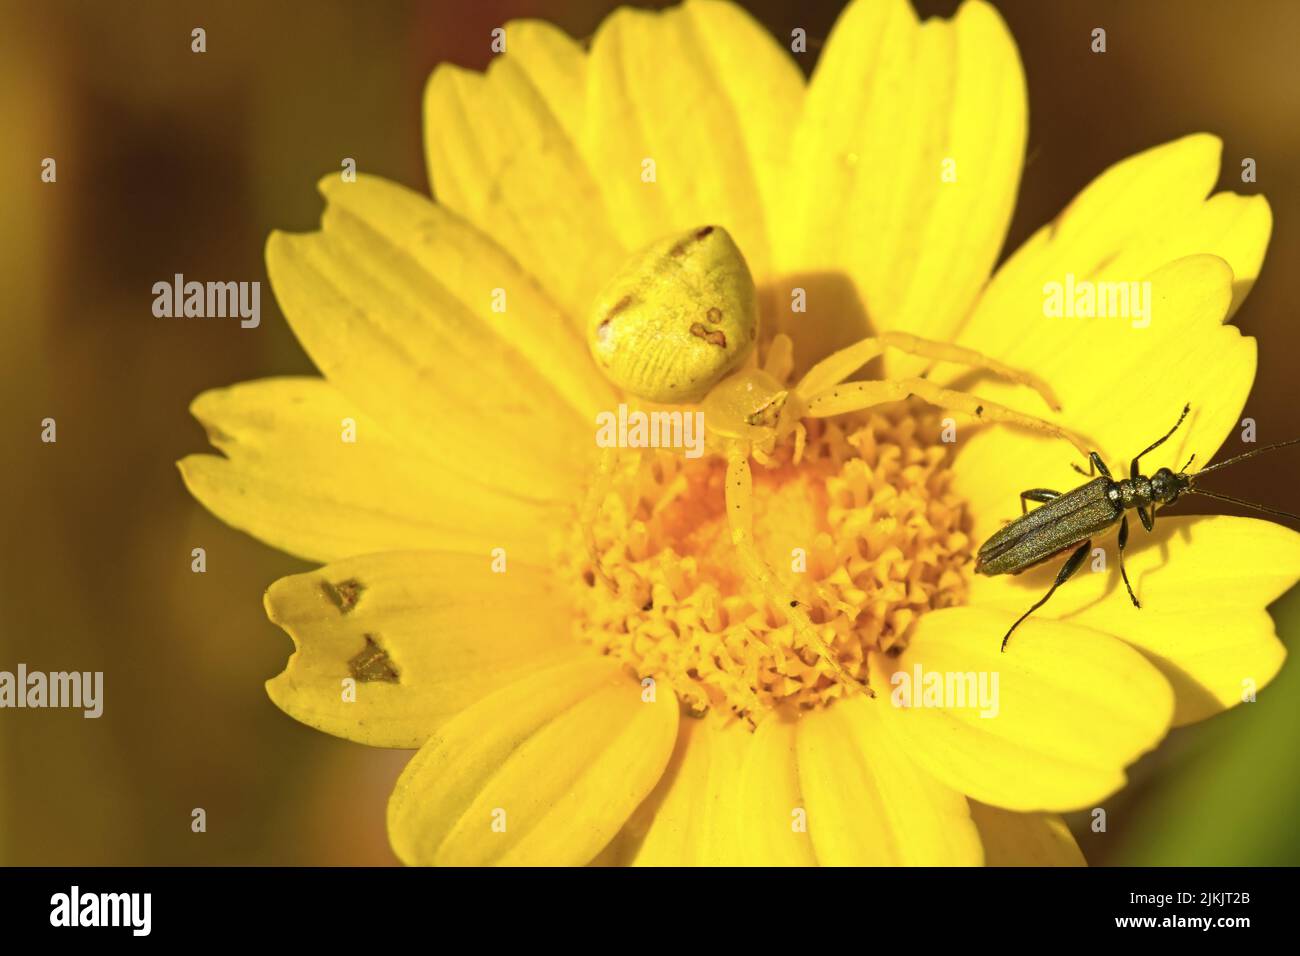 Die gelbe Krabbenspinne jagt einen Käfer Stockfoto